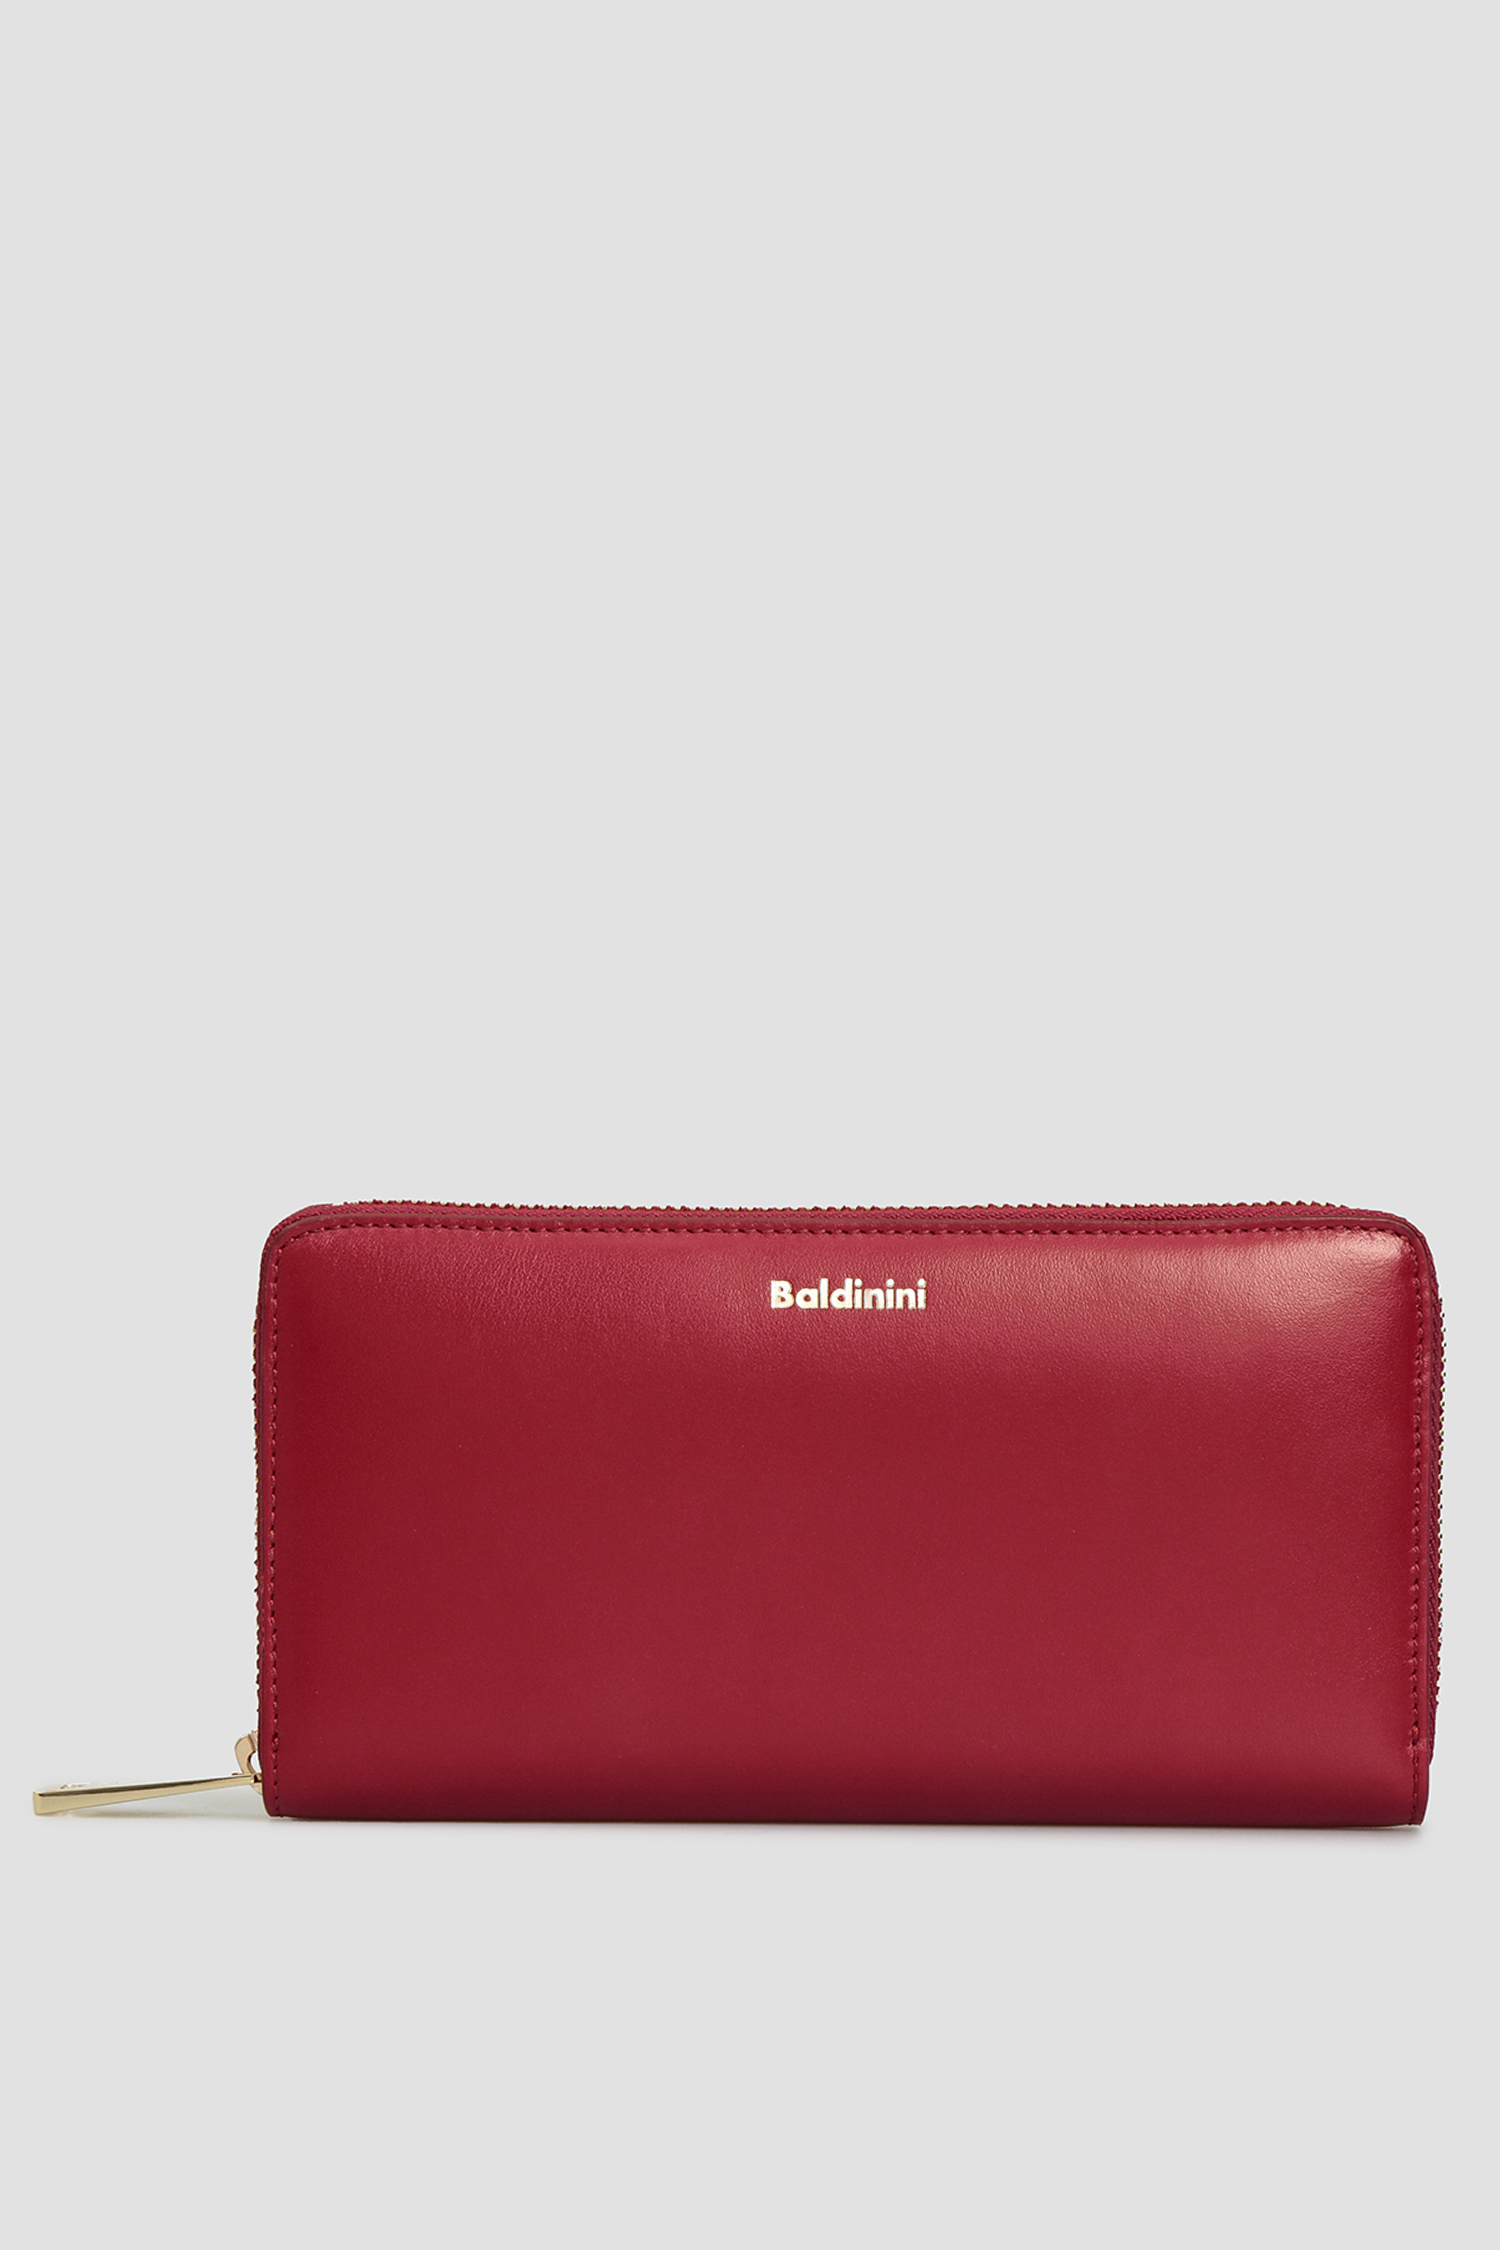 Бордовый кожаный кошелек для девушек Baldinini P2B002FIRE;7040